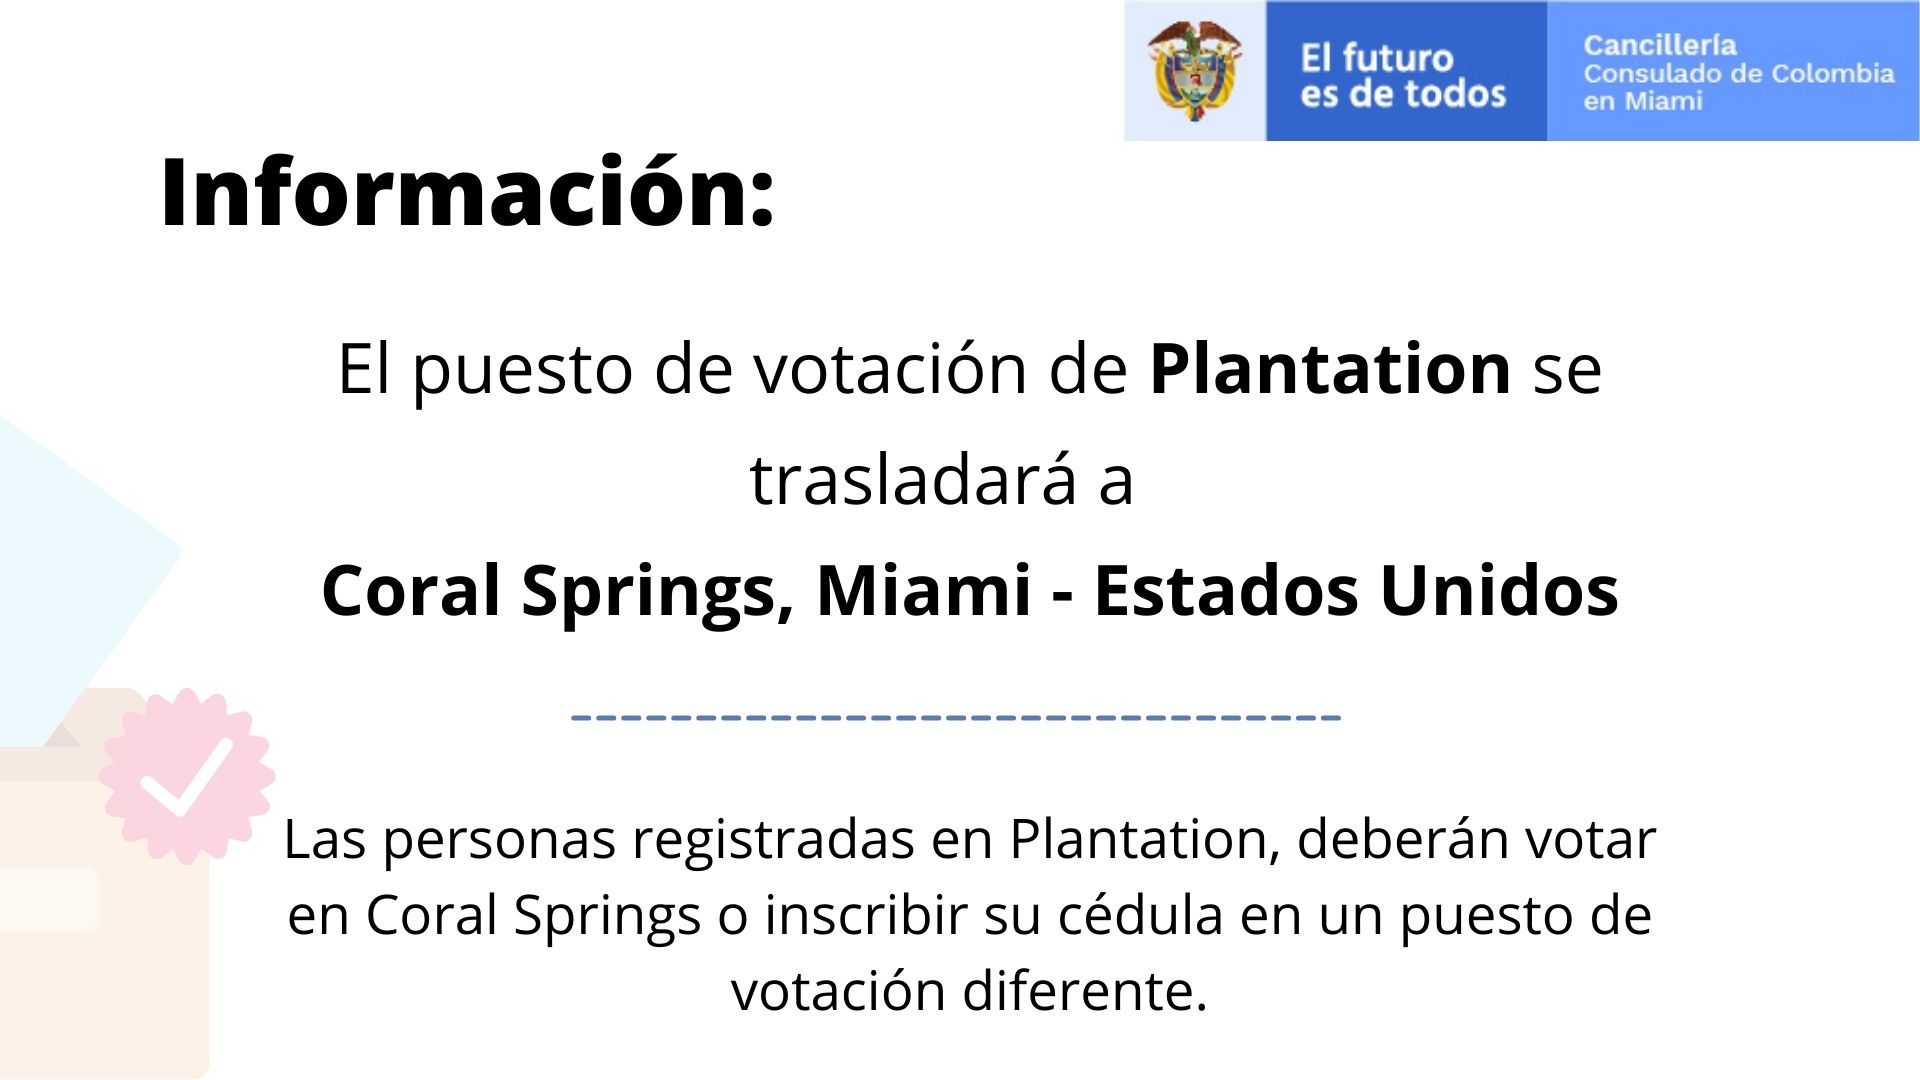 El puesto de votación de Plantation se trasladará a Coral Springs